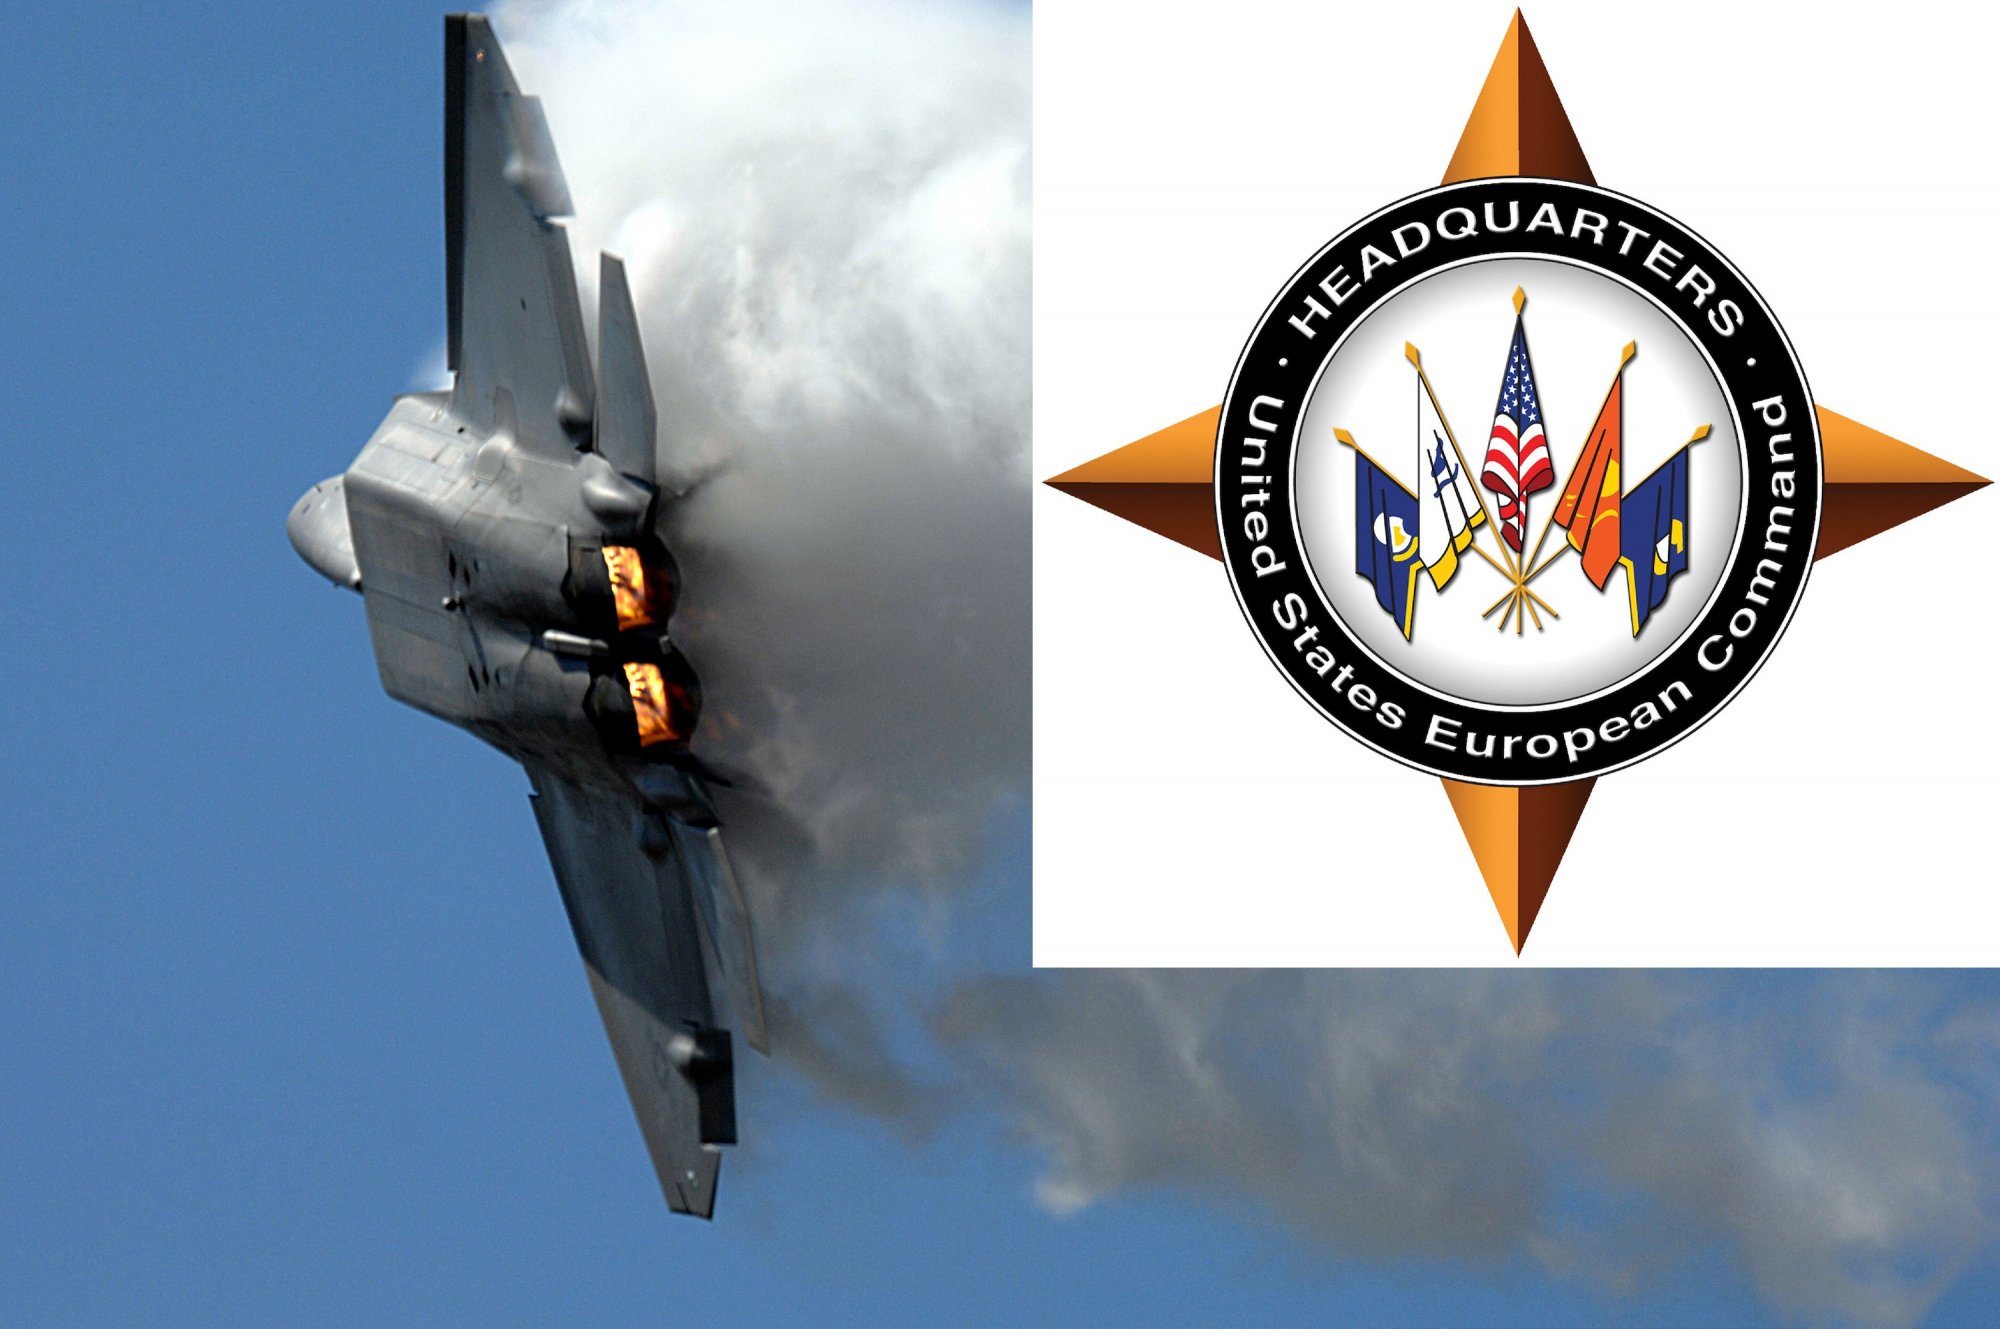 ΗΠΑ: Συντριβή πολεμικού αεροσκάφους στην Ανατολική Μεσόγειο κατά την διάρκεια εκπαιδευτικής πτήσης